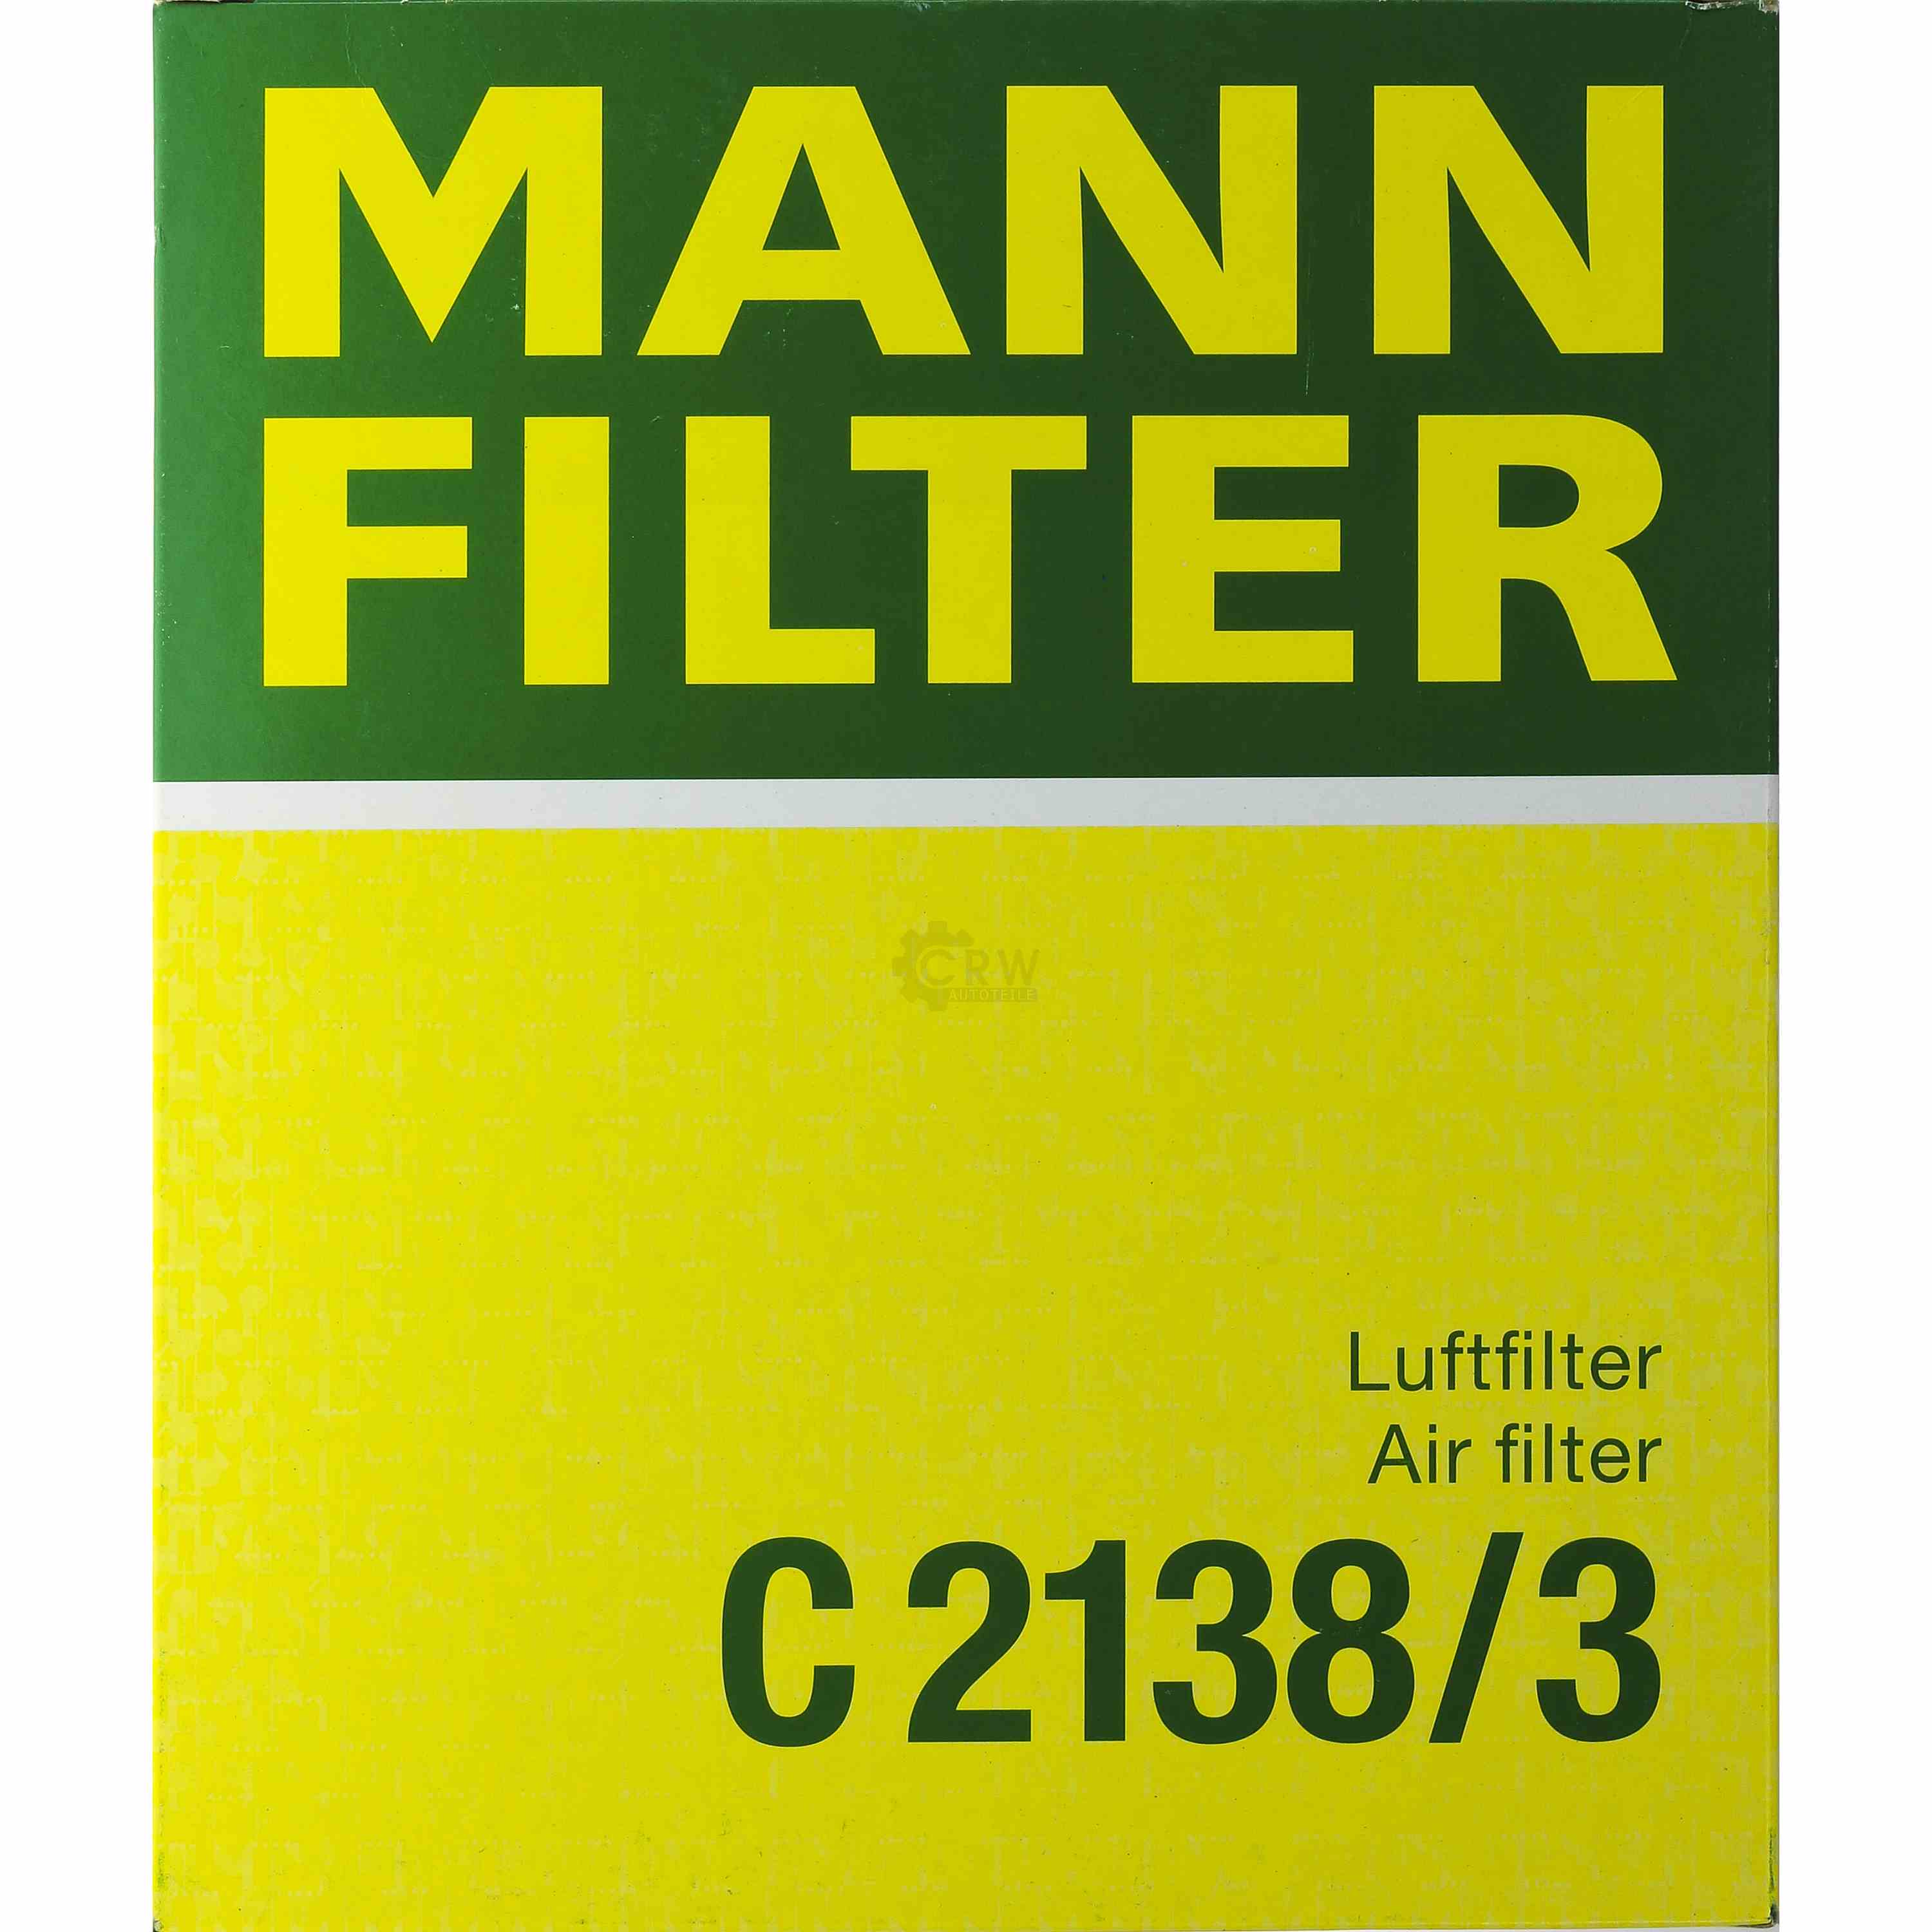 MANN-FILTER Luftfilter für Honda CRX III EH EG 1.6 ESi 1.6i VTi Civic VI